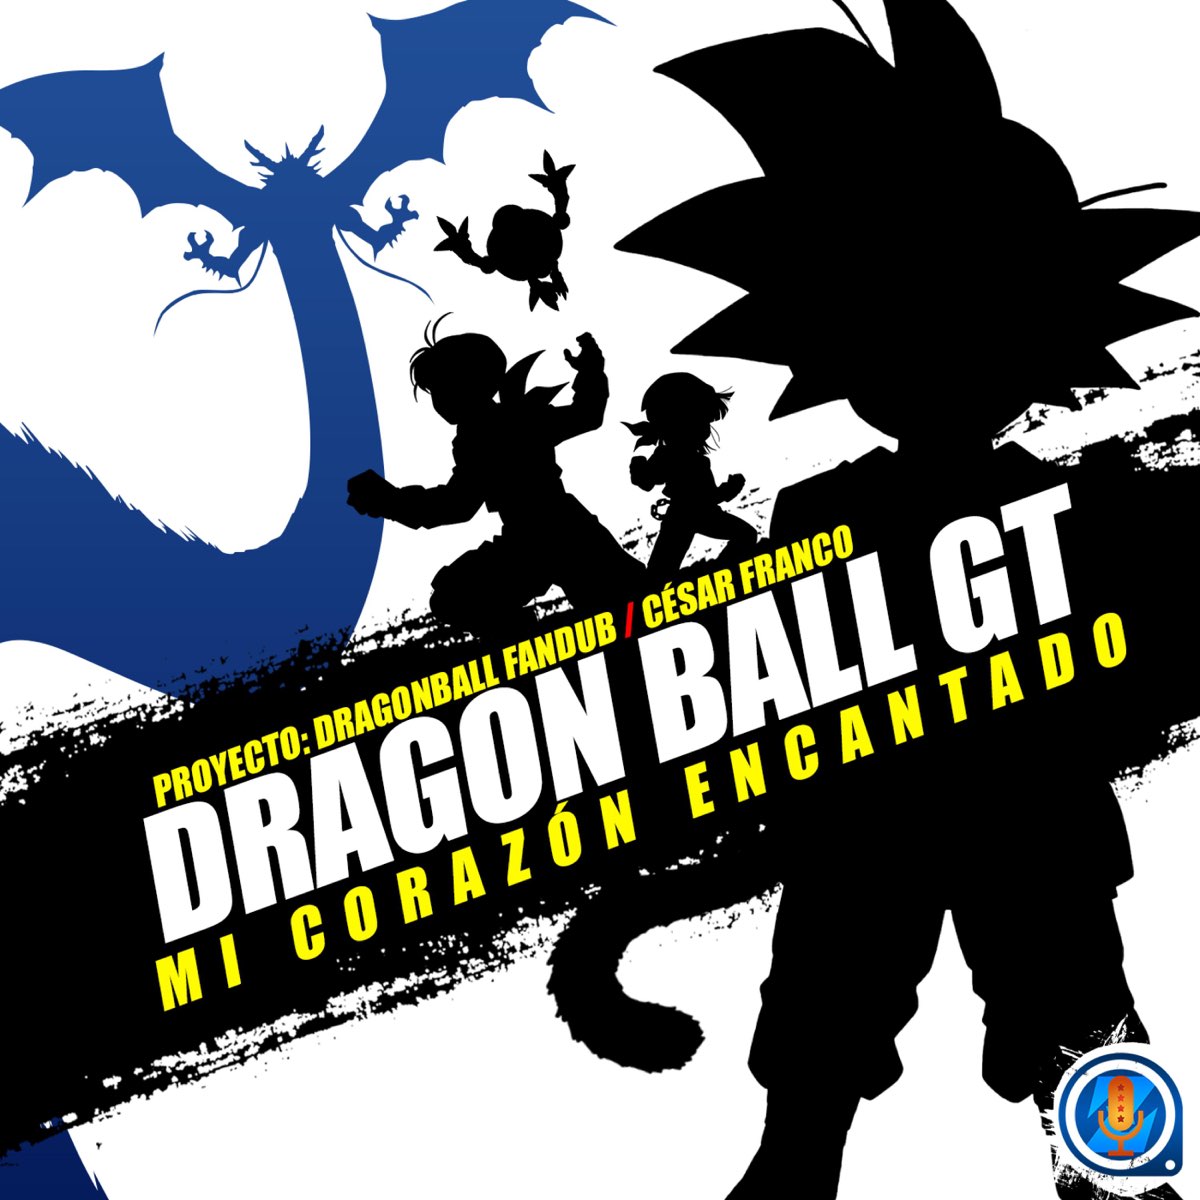 Play Mi Corazon Encantado (Dragon Ball)